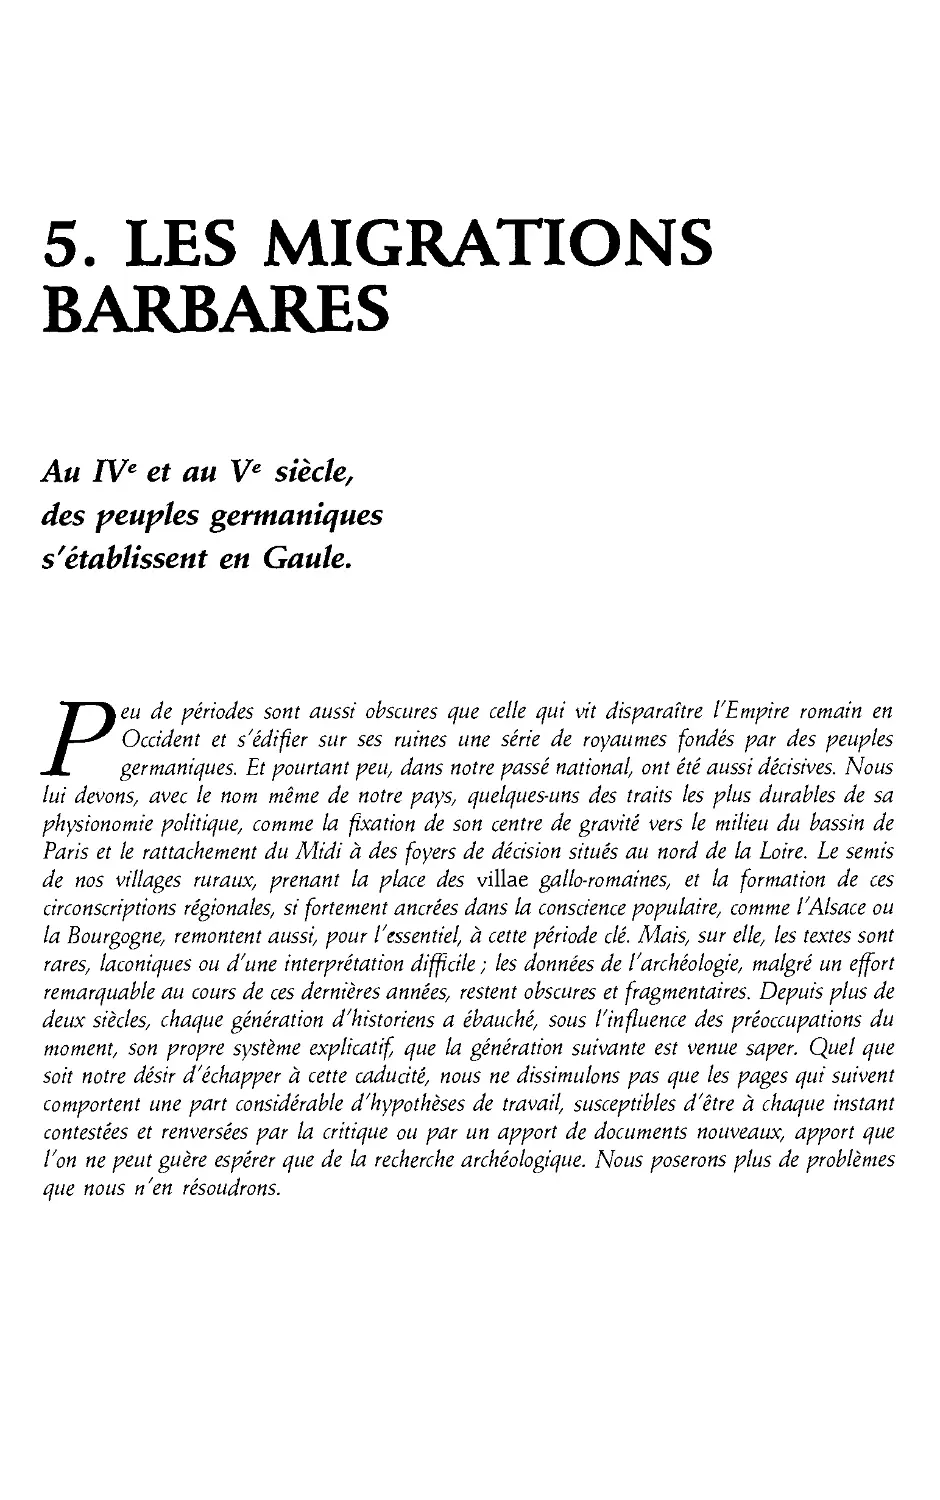 5. Les migrations barbares, IV-V siecle [118]